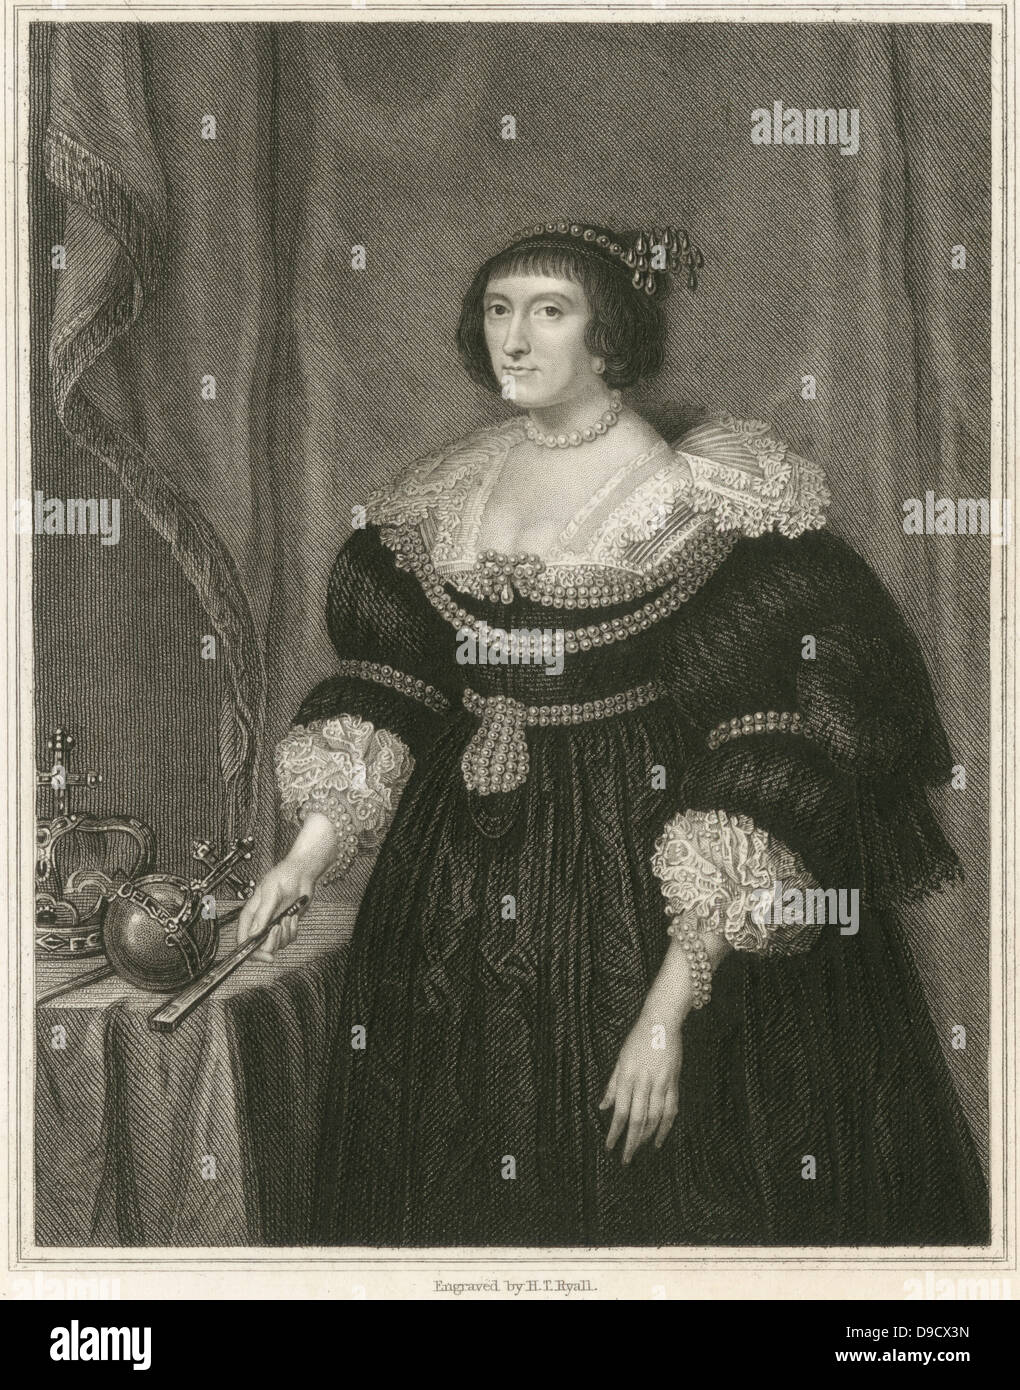 Elizabeth Stuart (1596-1662) regina di Boemia, figlia di Giacomo I di Englandd VI di Scozia. Si è sposato nel 1613 Federico V Elettore Palatino 1610-1623, re di Boemia 1619-1620. Conosciuta come la regina di inverno, ha trascorso gran parte del suo esilio all'Aia. Incisione. Foto Stock